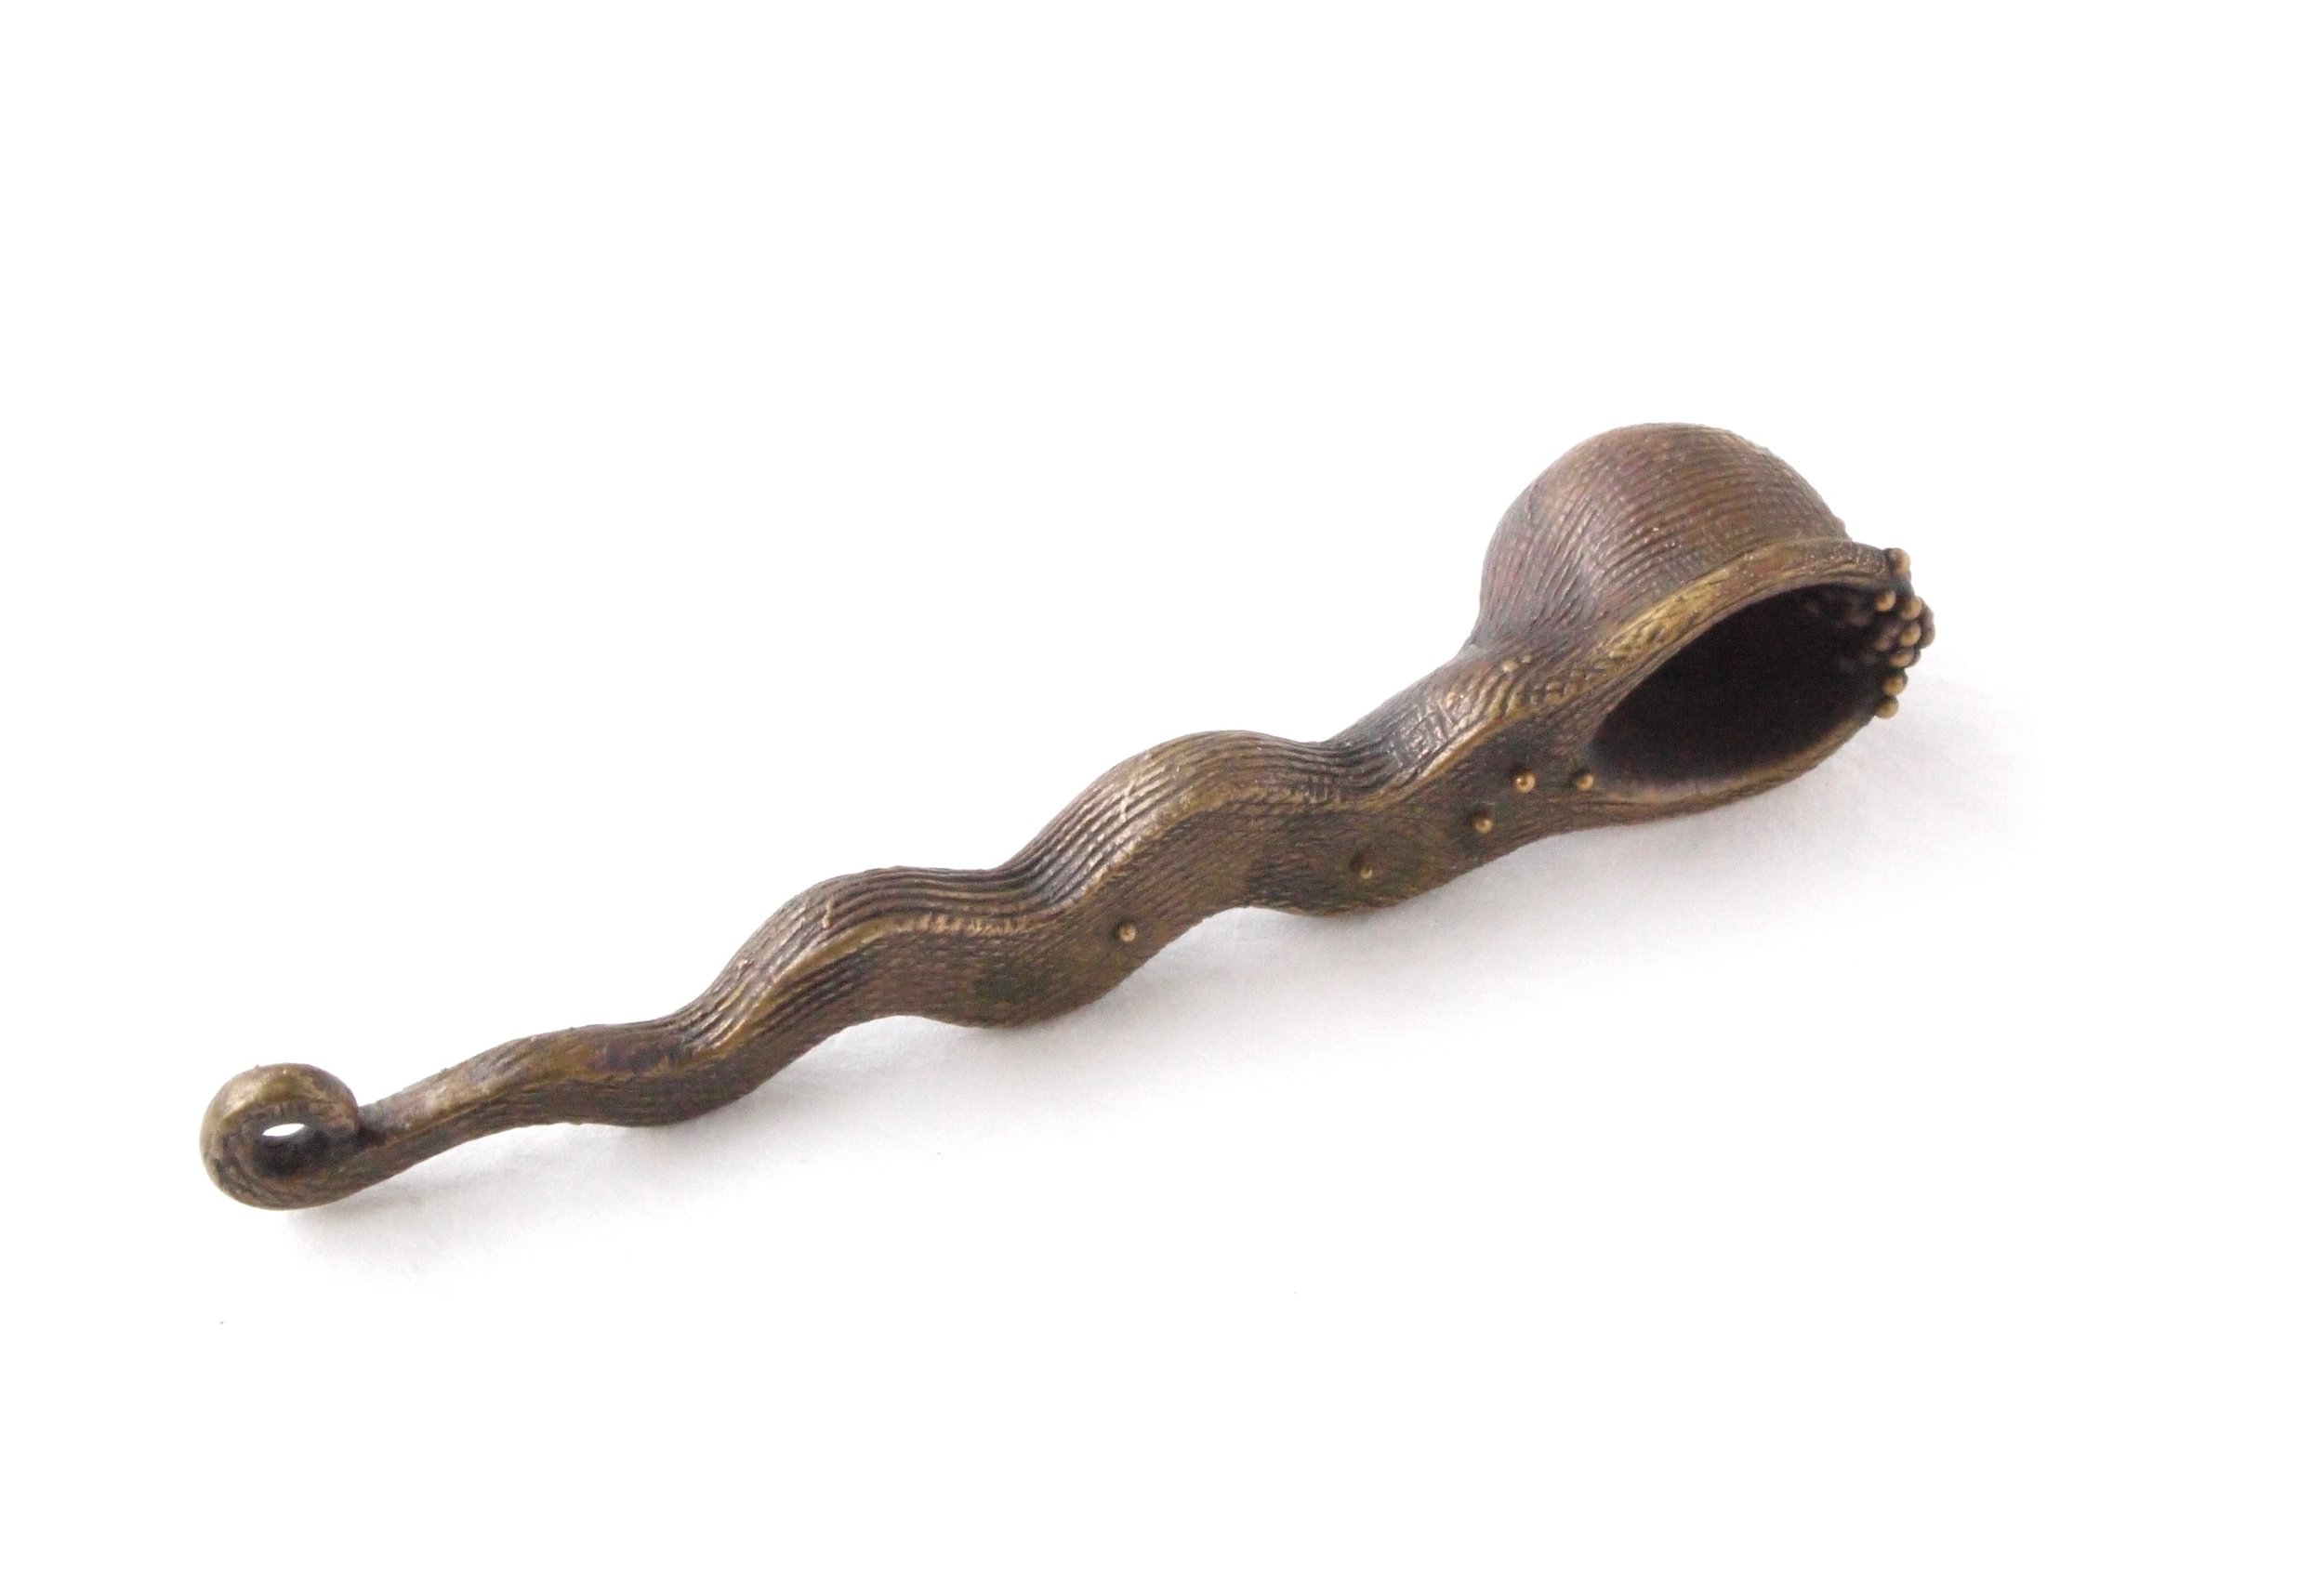 serpent spoon.jpg